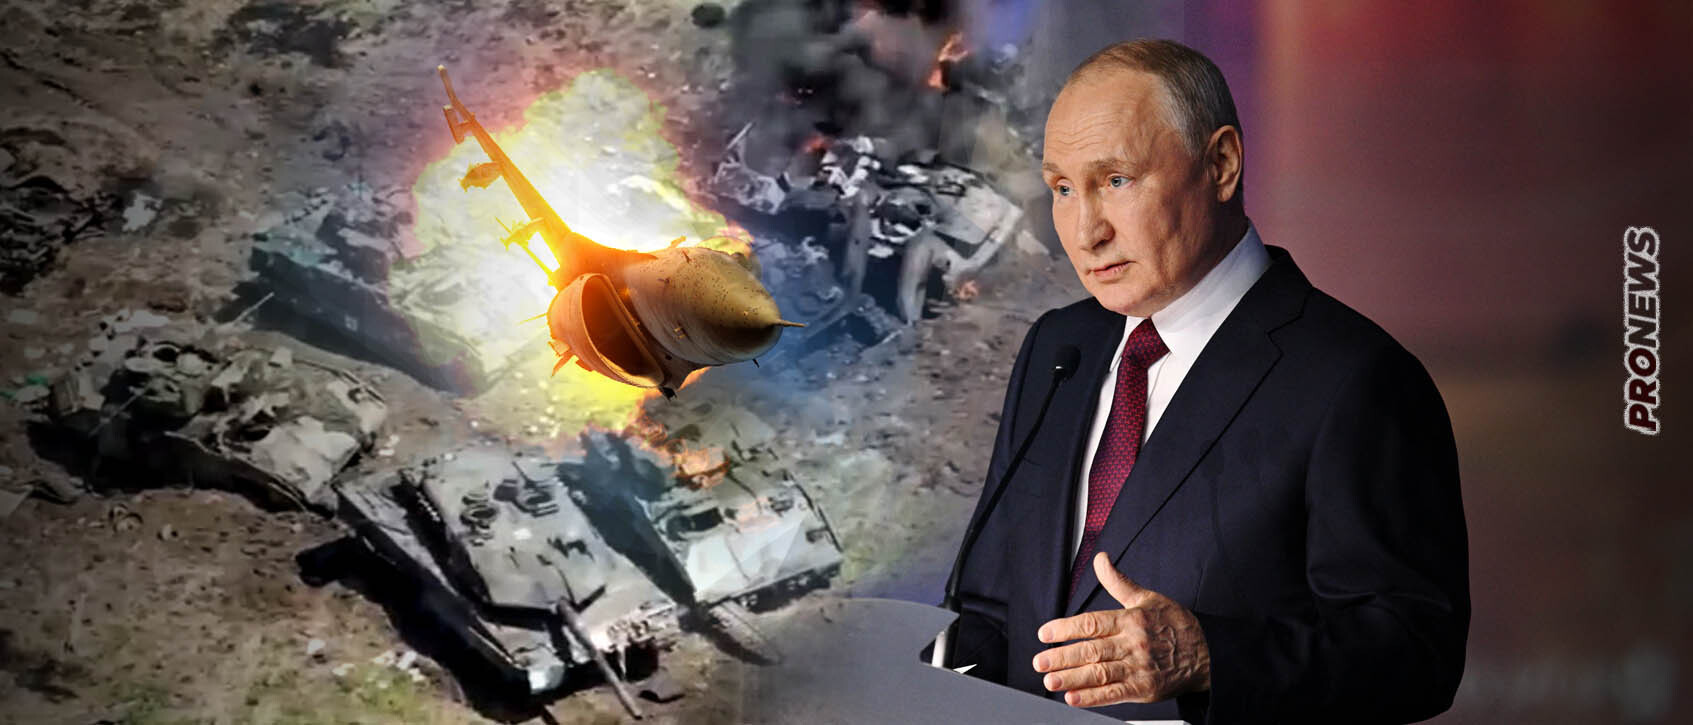 Β.Πούτιν από την Αγία Πετρούπολη: «Όπως καίγονται τα  Leopard τώρα στην Ουκρανία έτσι θα συμβεί  και με τα F-16»! (upd)